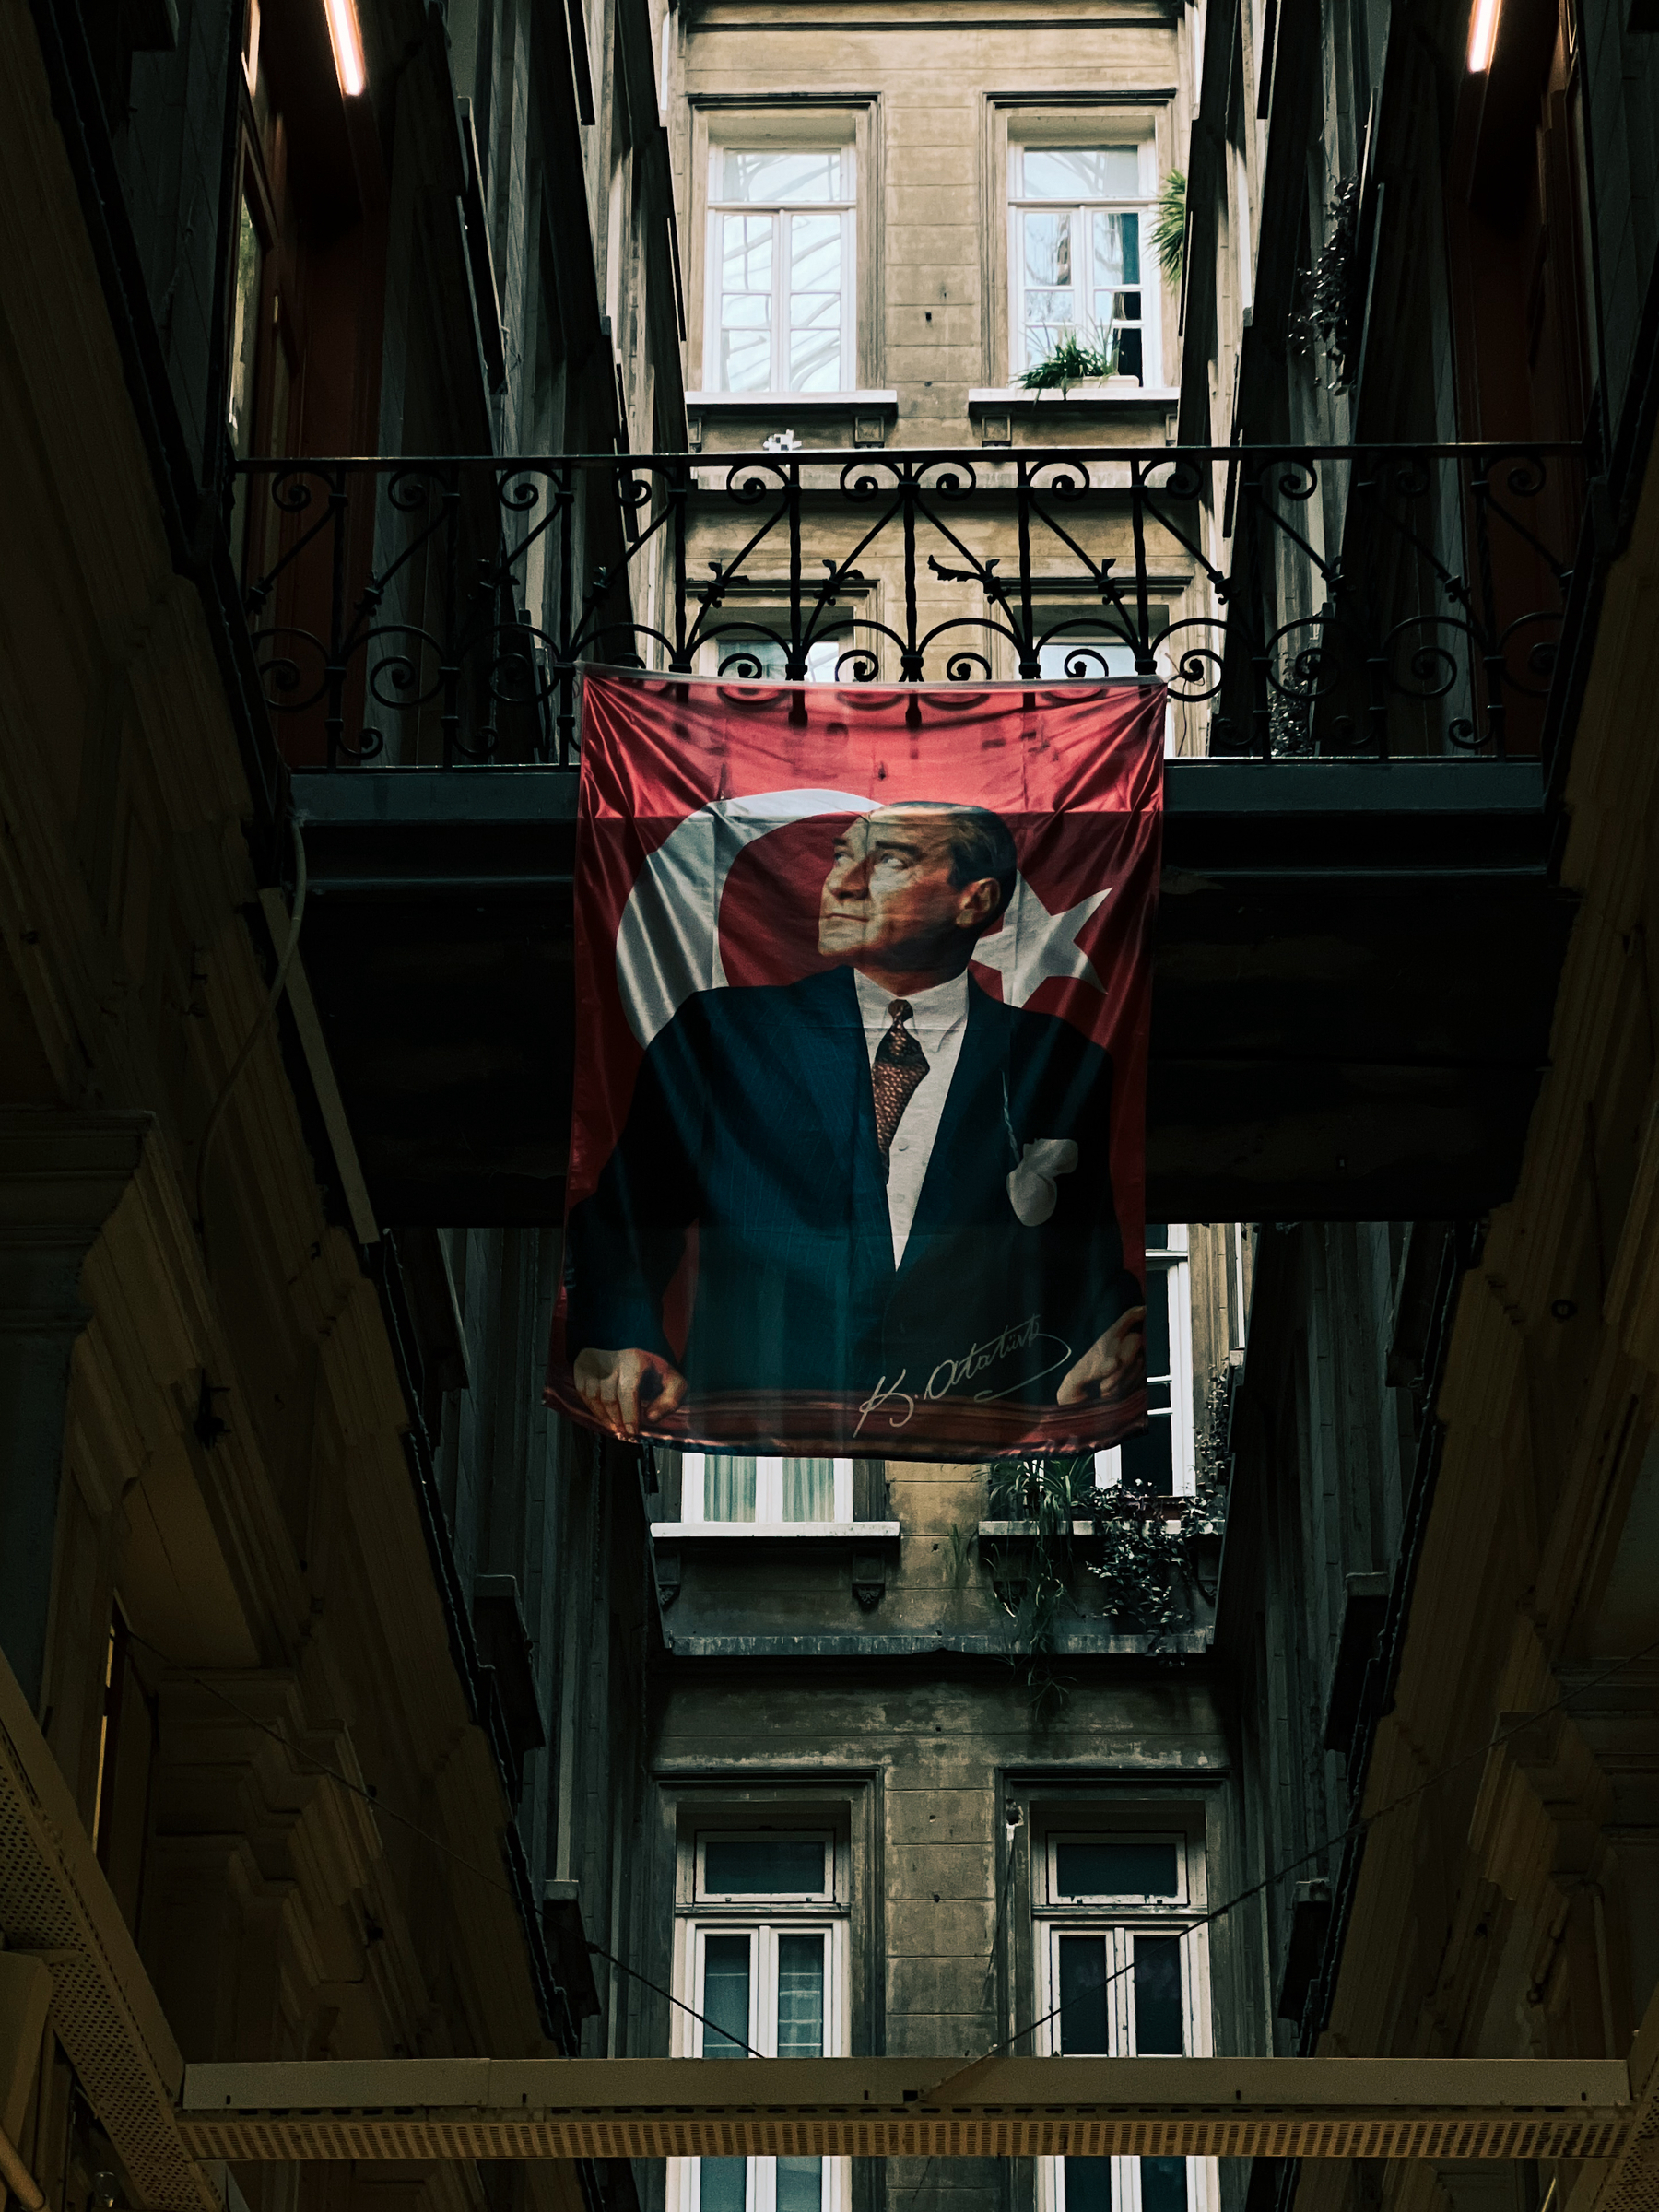 An Ataturk flag hangs inside a building. 